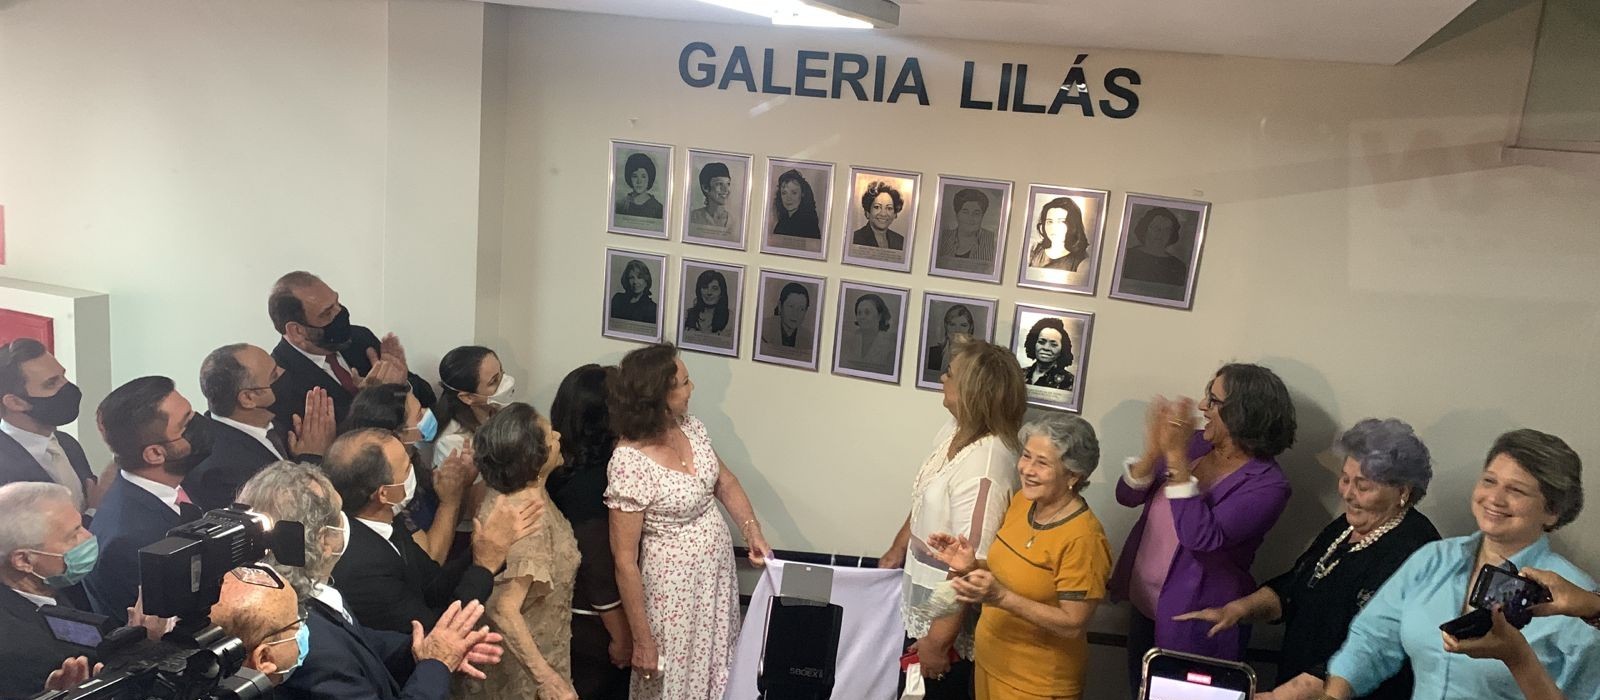 Vereadoras de Maringá são homenageadas em galeria de fotos na sede do Legislativo